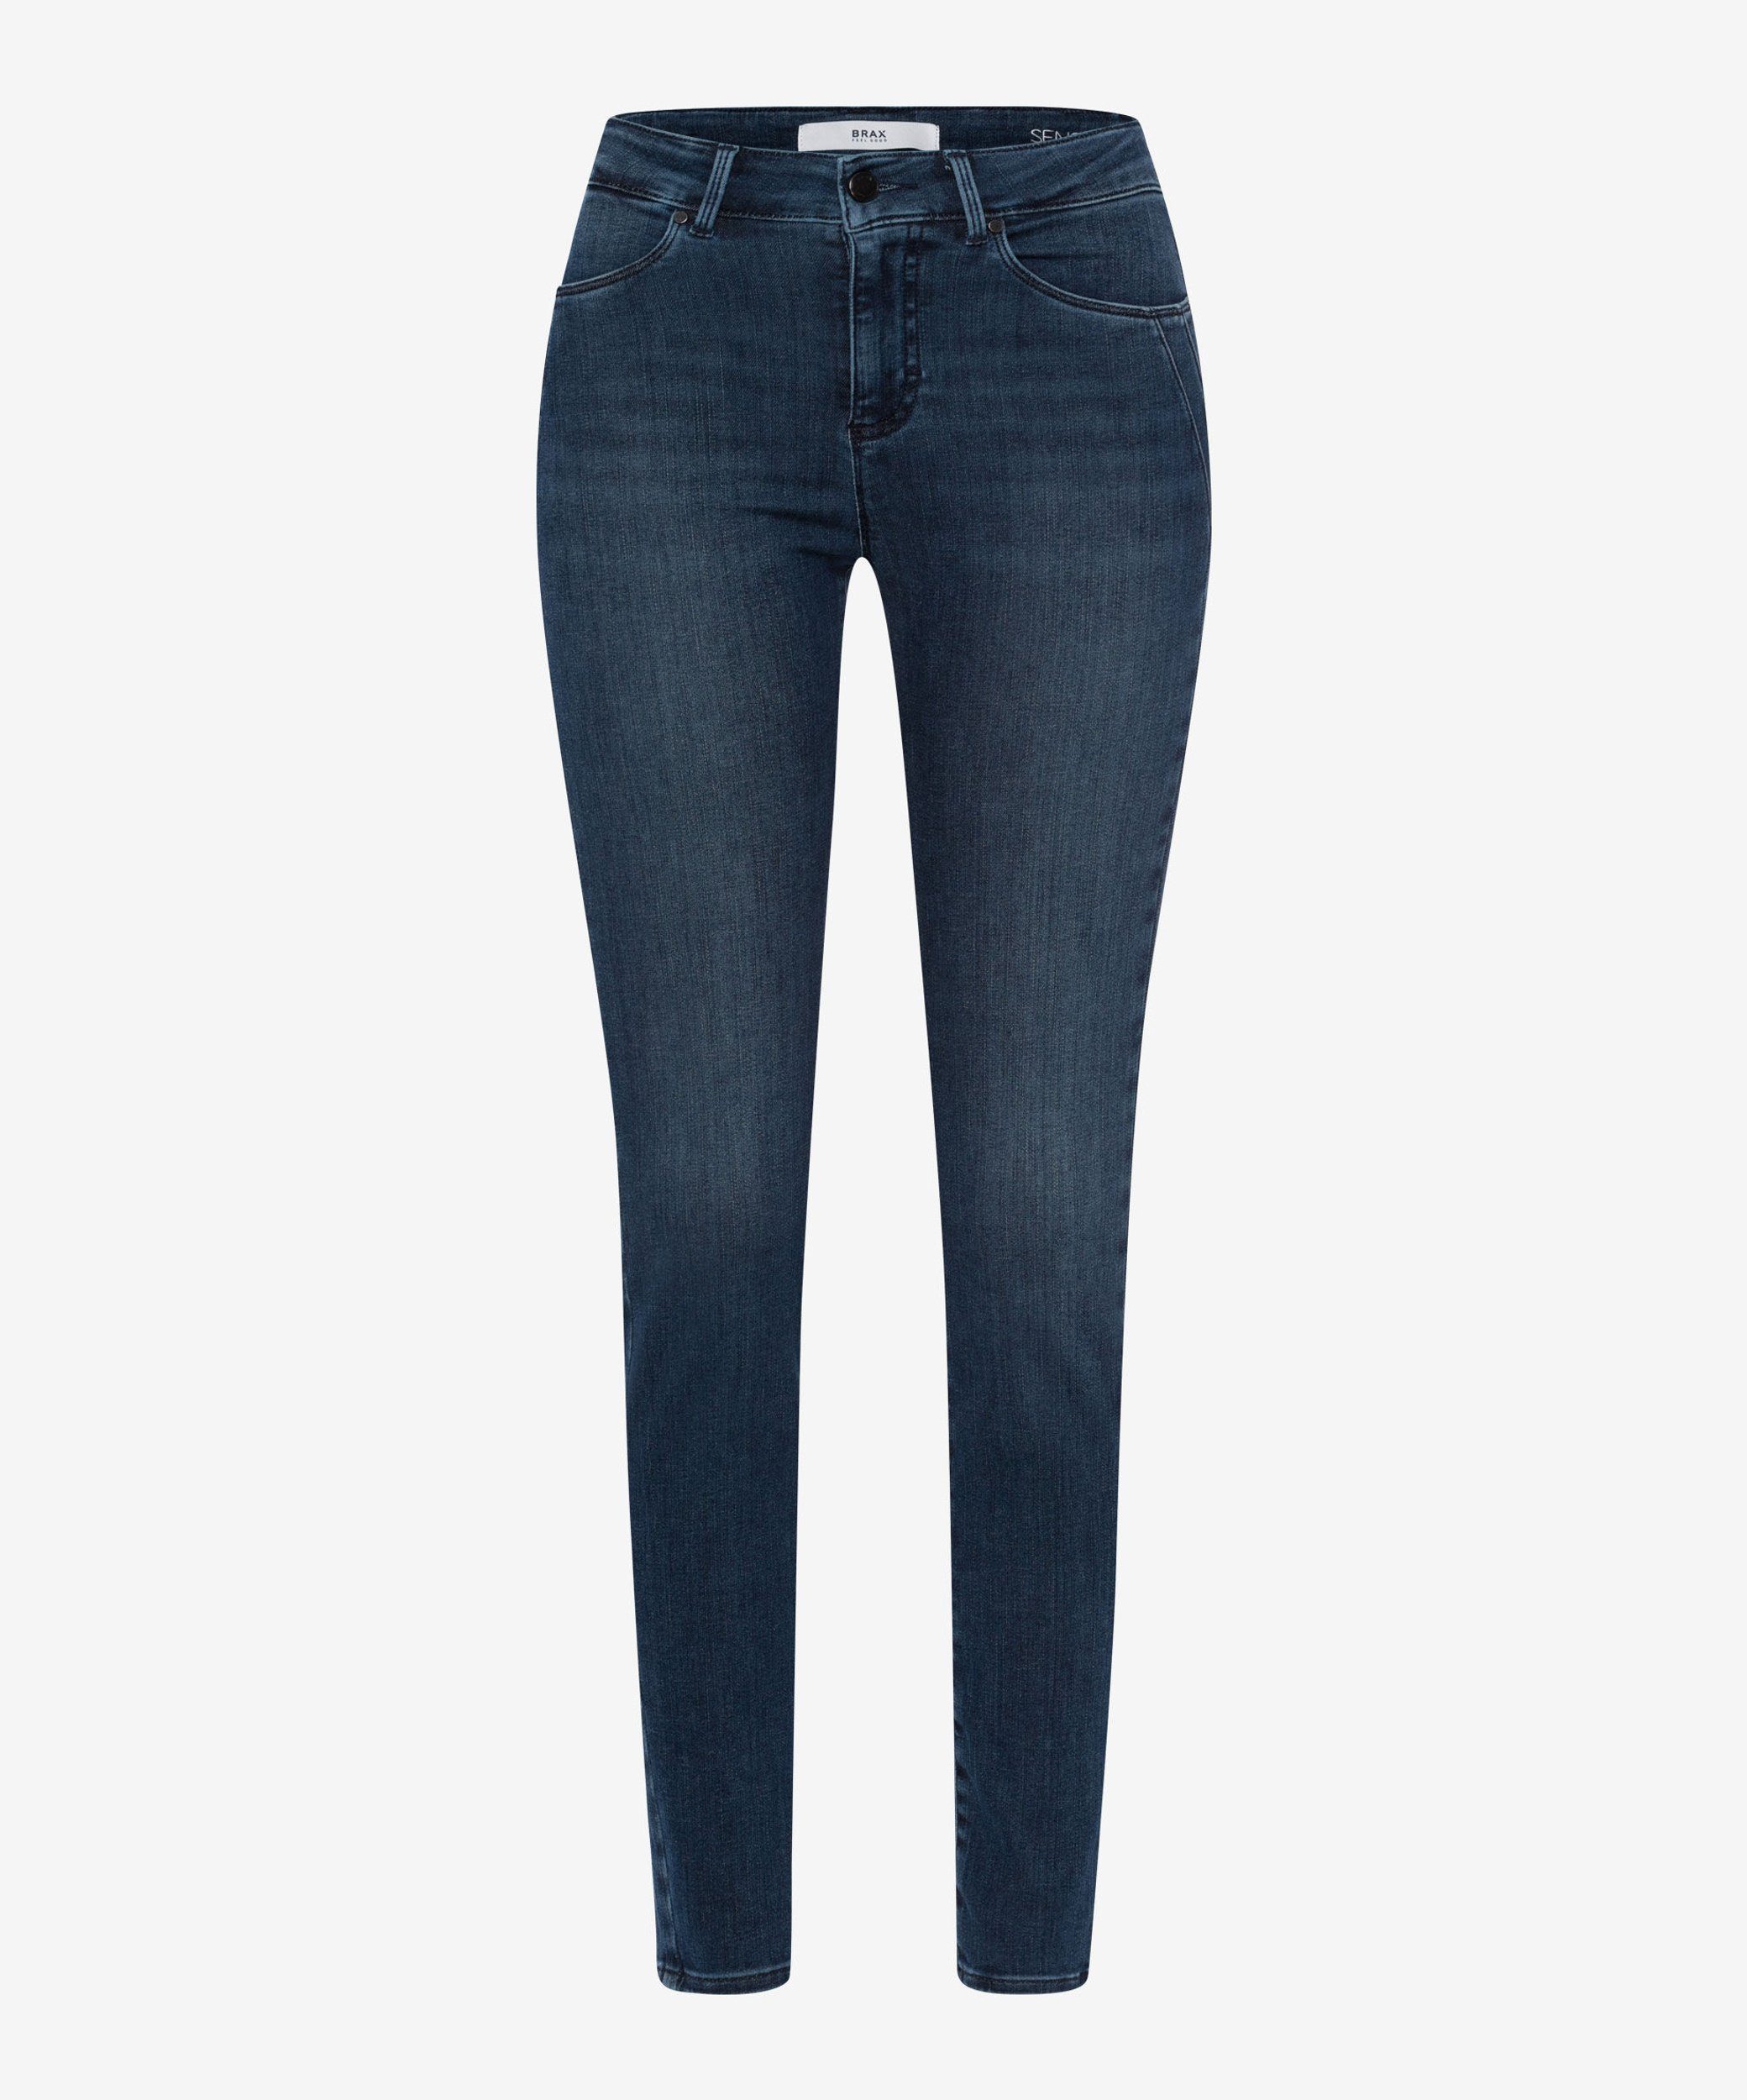 Aktionspreis Brax Skinny-fit-Jeans Style Ana